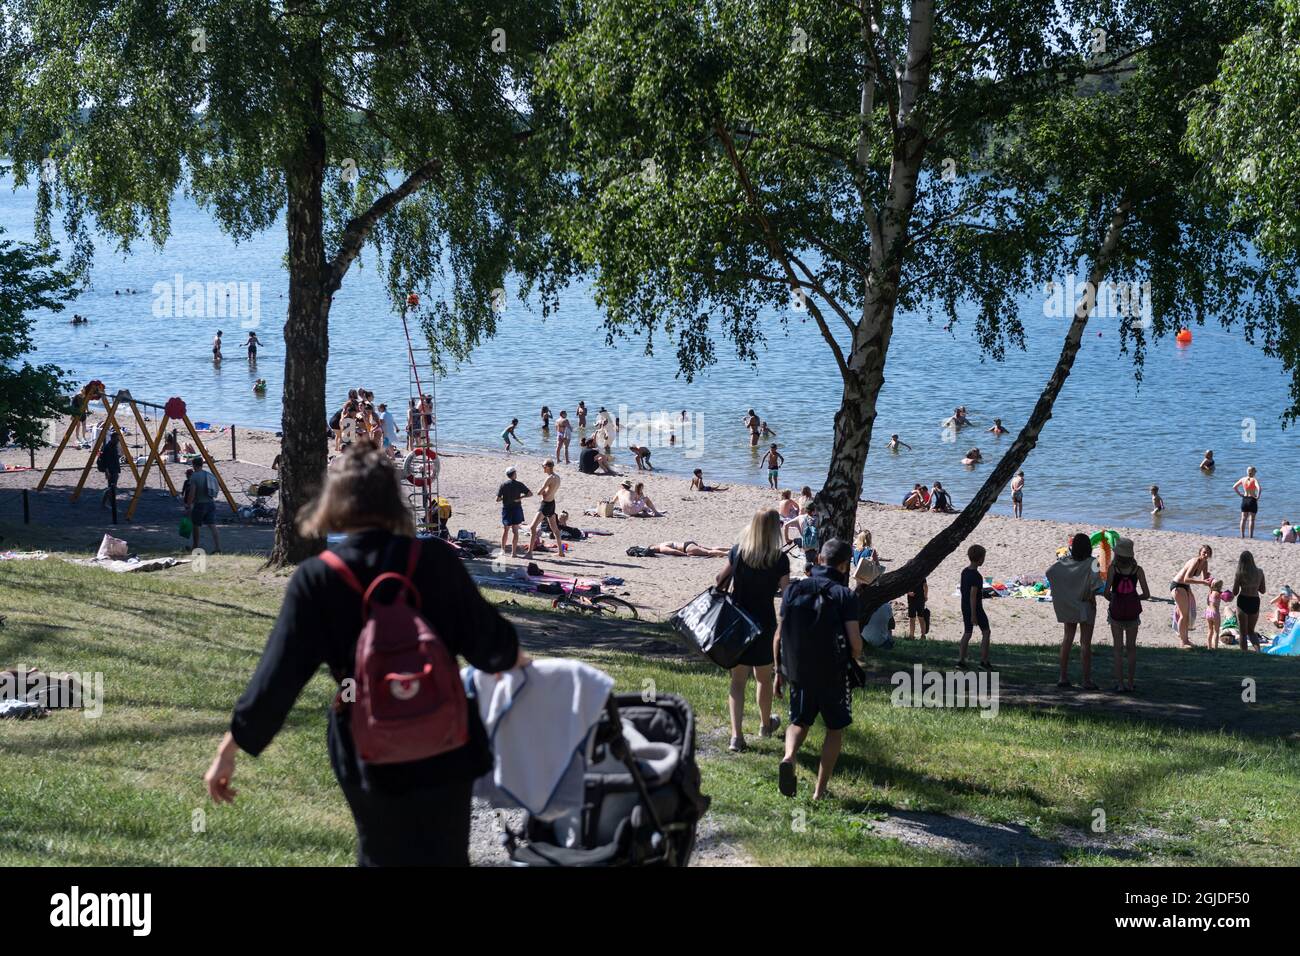 Les gens apprécient les températures estivales à la plage de Malarhojdsbadet, au lac de Malaren à Stockholm, en Suède, le 23 juin 2020. Les températures devraient dépasser 30 degrés Celsius au cours des prochains jours. Photo: Stina Stjernkvist / TT / code 11610 *** SUÈDE OUT *** Banque D'Images